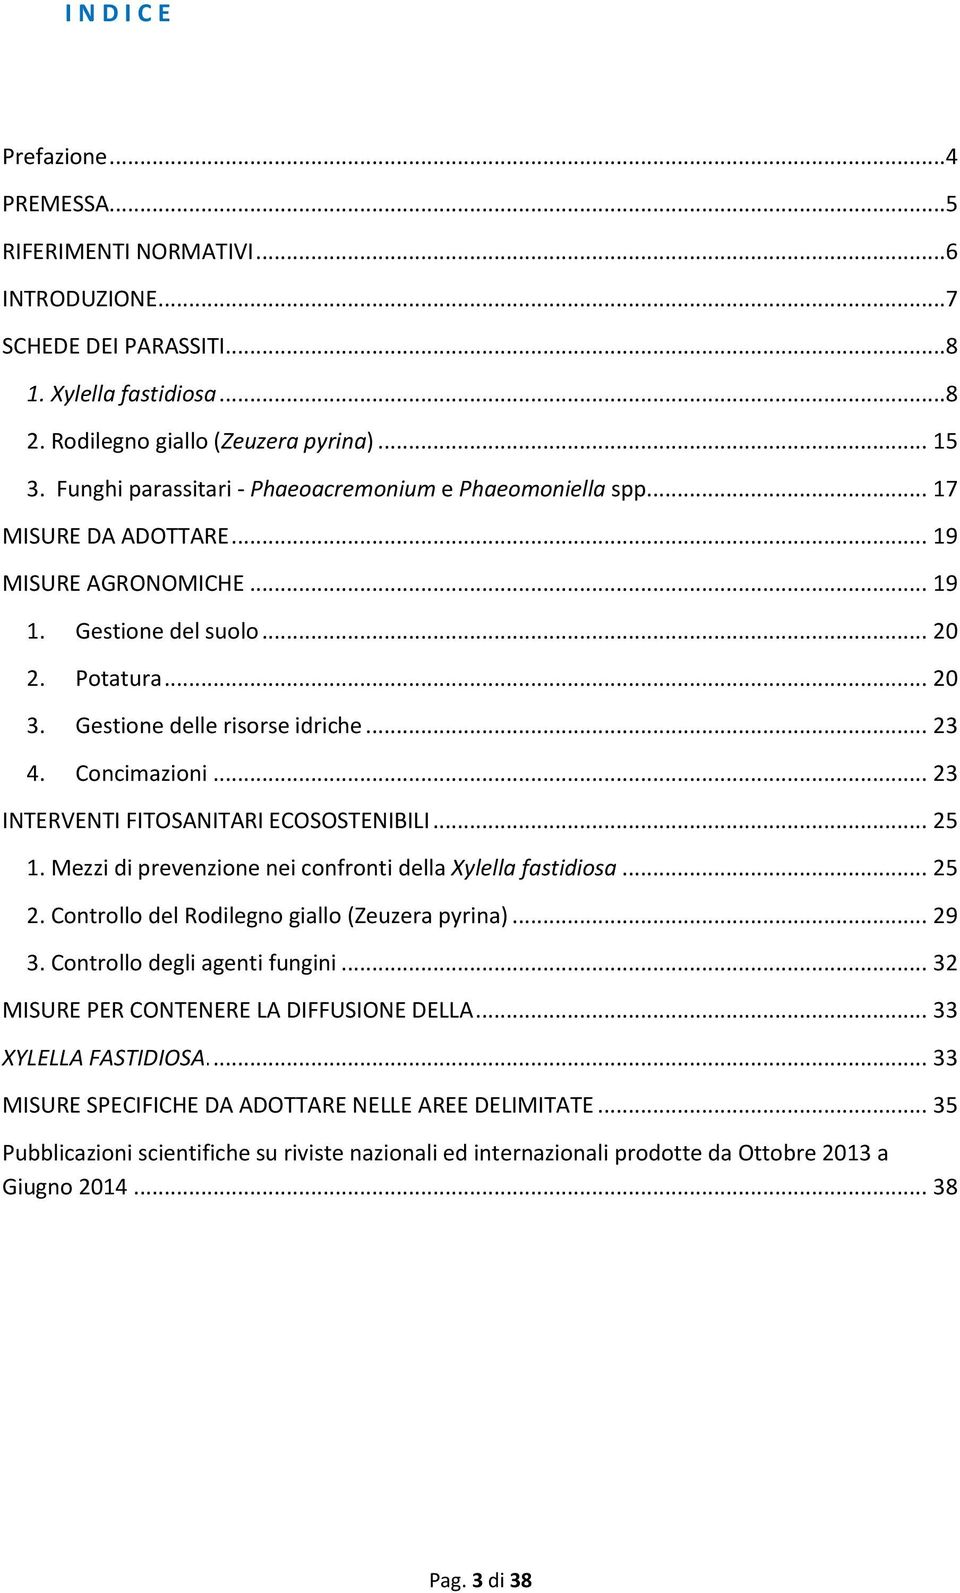 Concimazioni... 23 INTERVENTI FITOSANITARI ECOSOSTENIBILI... 25 1. Mezzi di prevenzione nei confronti della Xylella fastidiosa... 25 2. Controllo del Rodilegno giallo (Zeuzera pyrina)... 29 3.